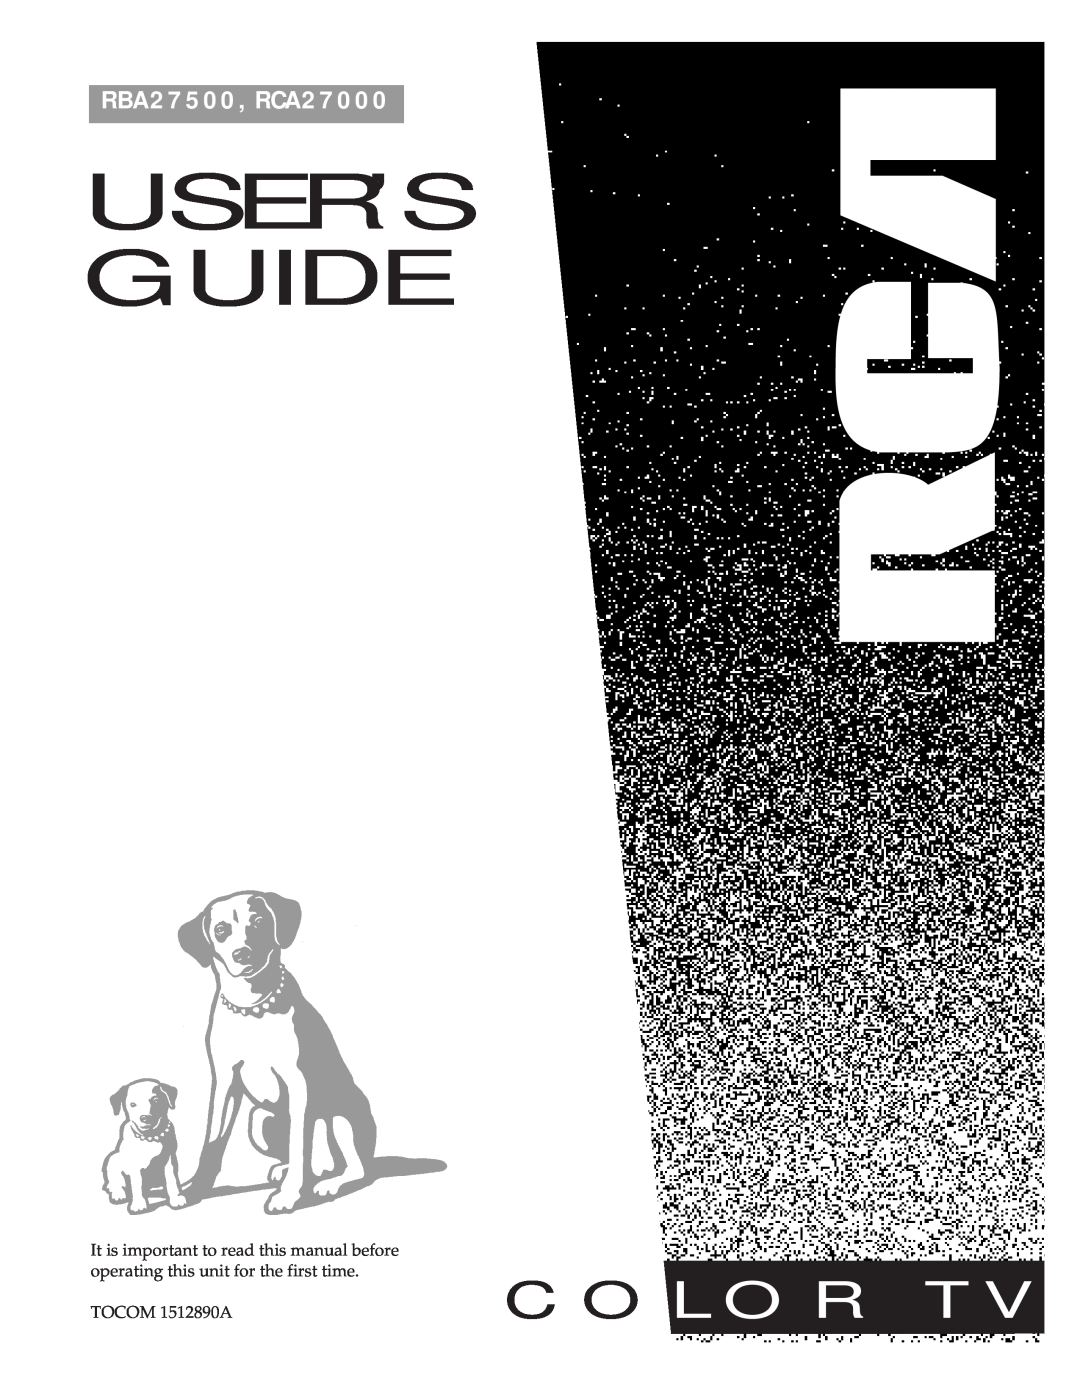 RCA RBA27500, 27000 manual User’S Guide, C O L O R T, RBA27500, RCA27000 